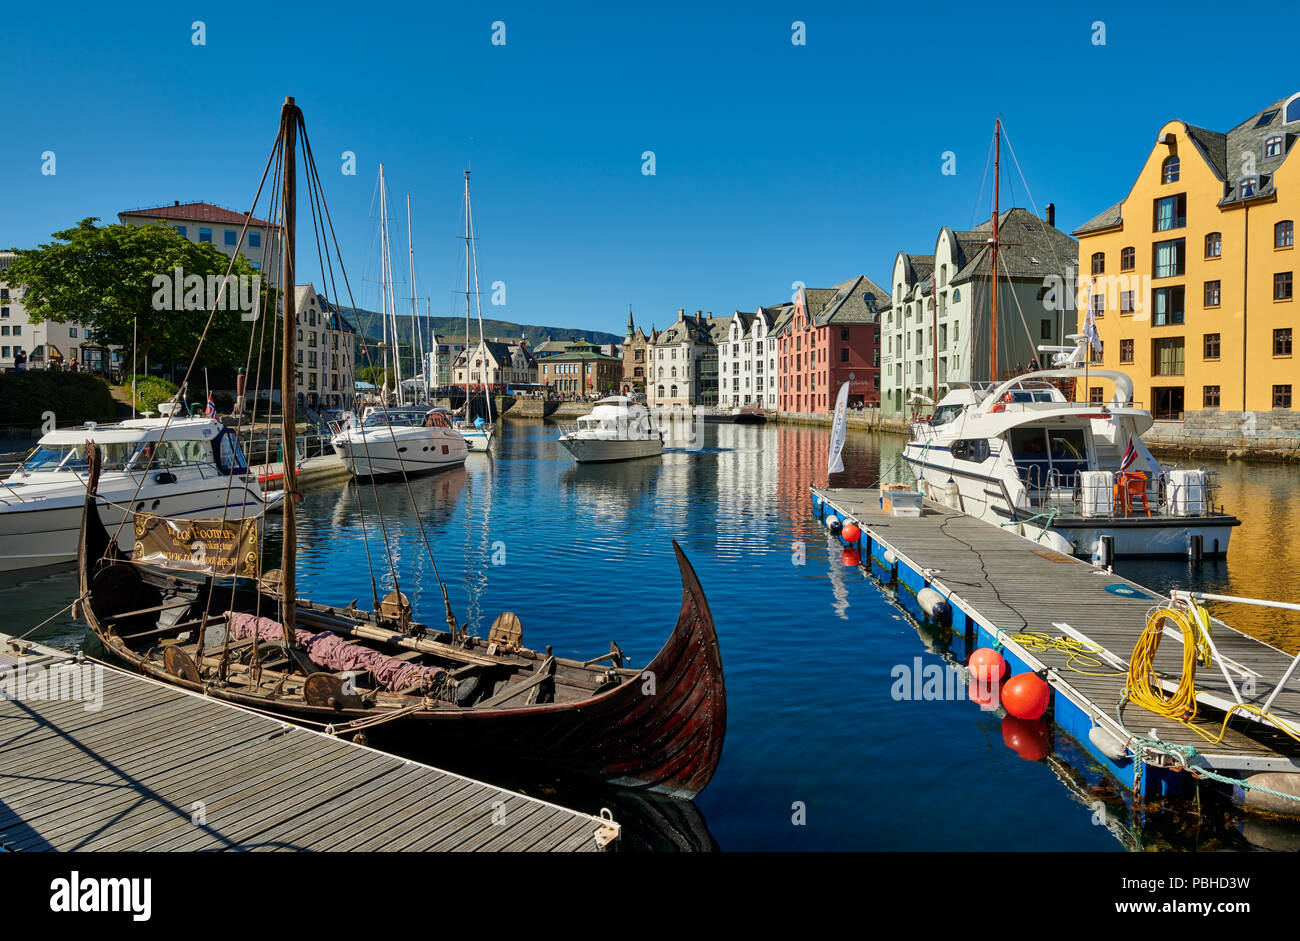 Vue sur le vieux port avec les édifices Art nouveau historique, Ålesund, Norvège, Europe Banque D'Images